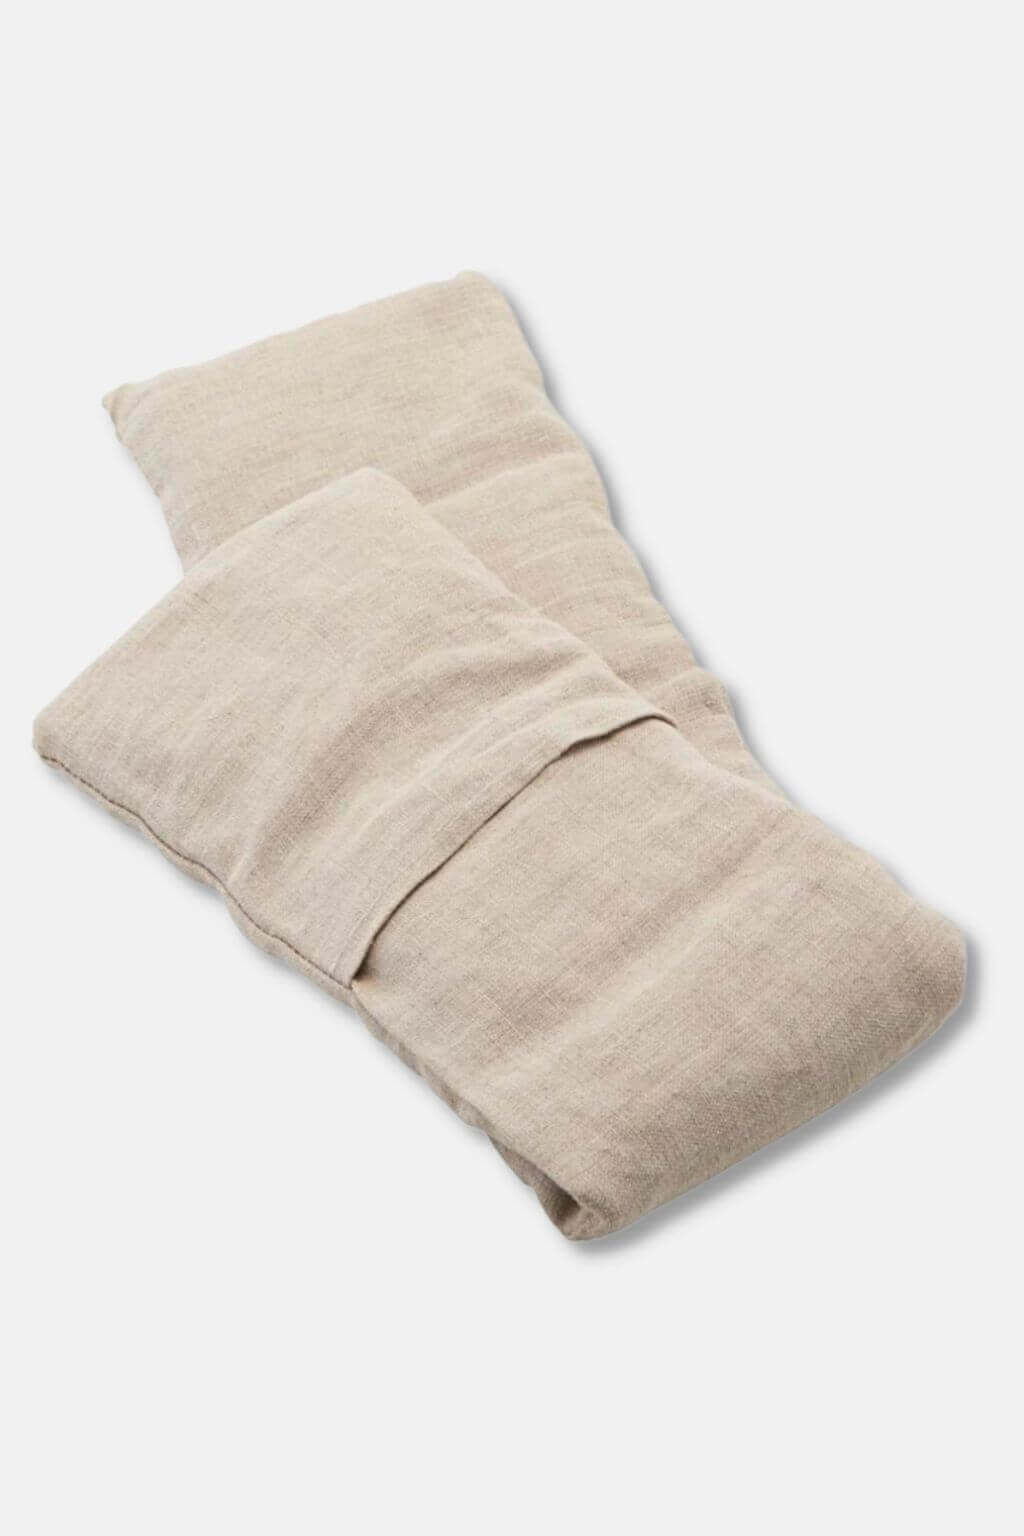 Meraki Therapy Pillow in Beige